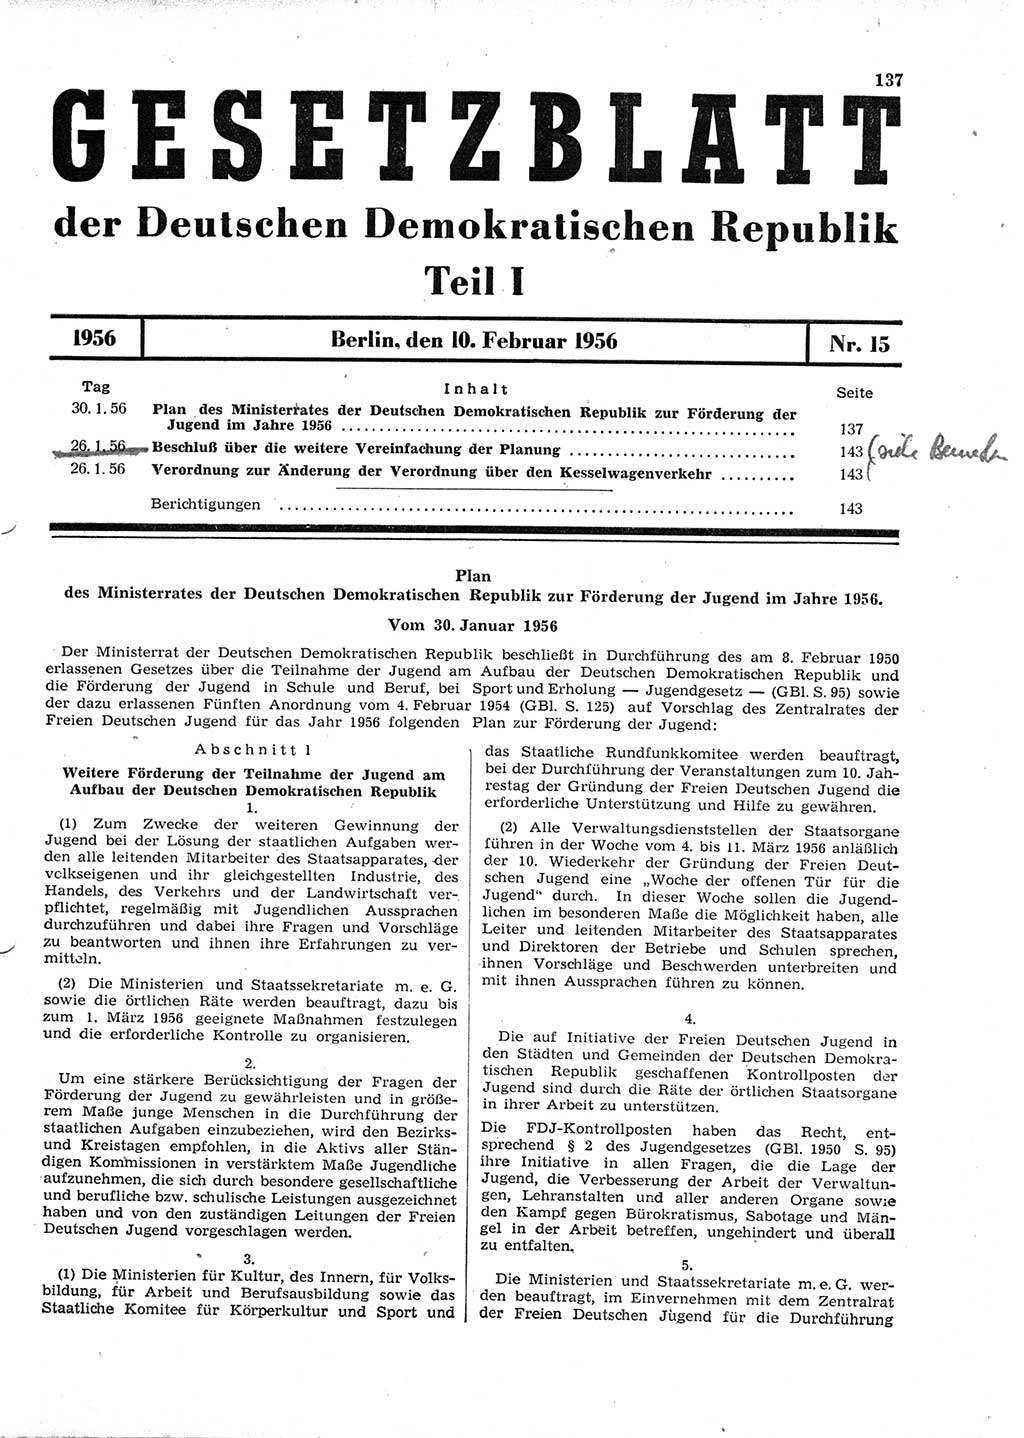 Gesetzblatt (GBl.) der Deutschen Demokratischen Republik (DDR) Teil Ⅰ 1956, Seite 137 (GBl. DDR Ⅰ 1956, S. 137)